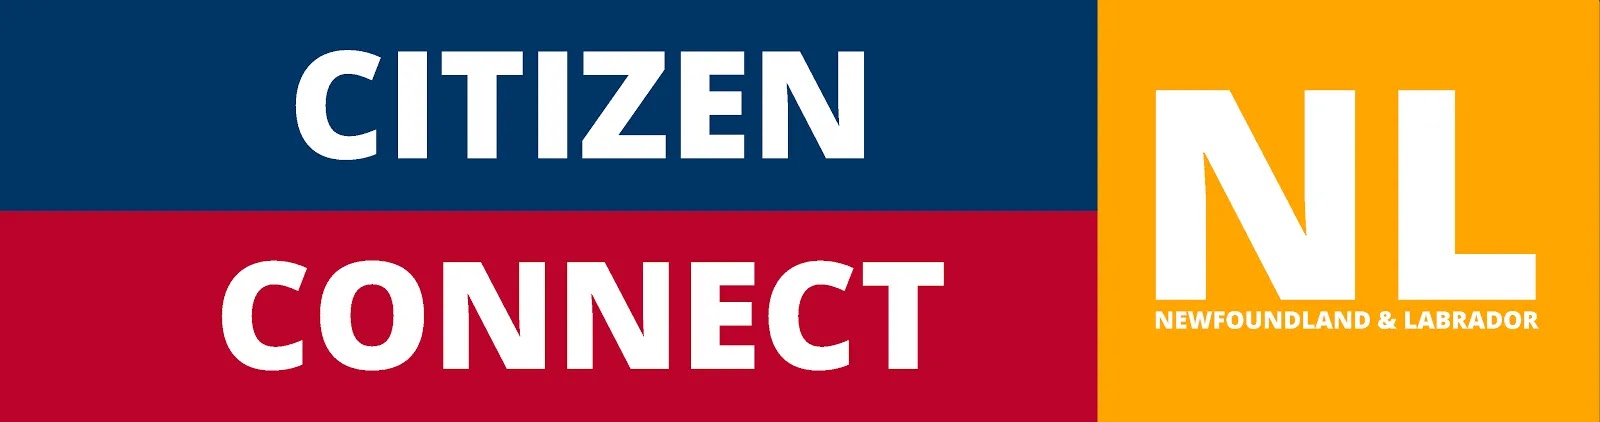 Citizen Connect Newfoundland and Labrador